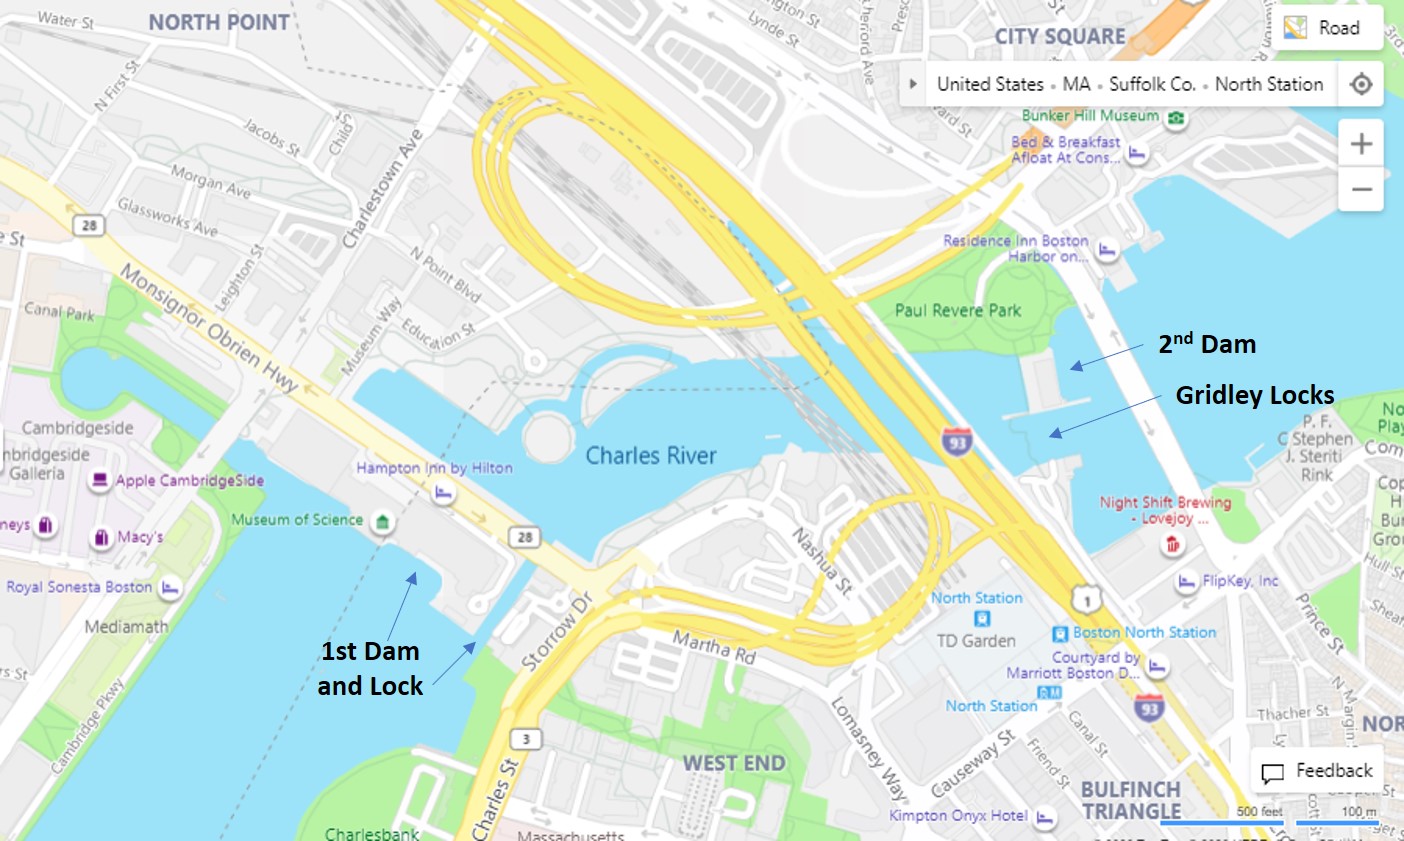 Charles River, Dams, Locks, Map